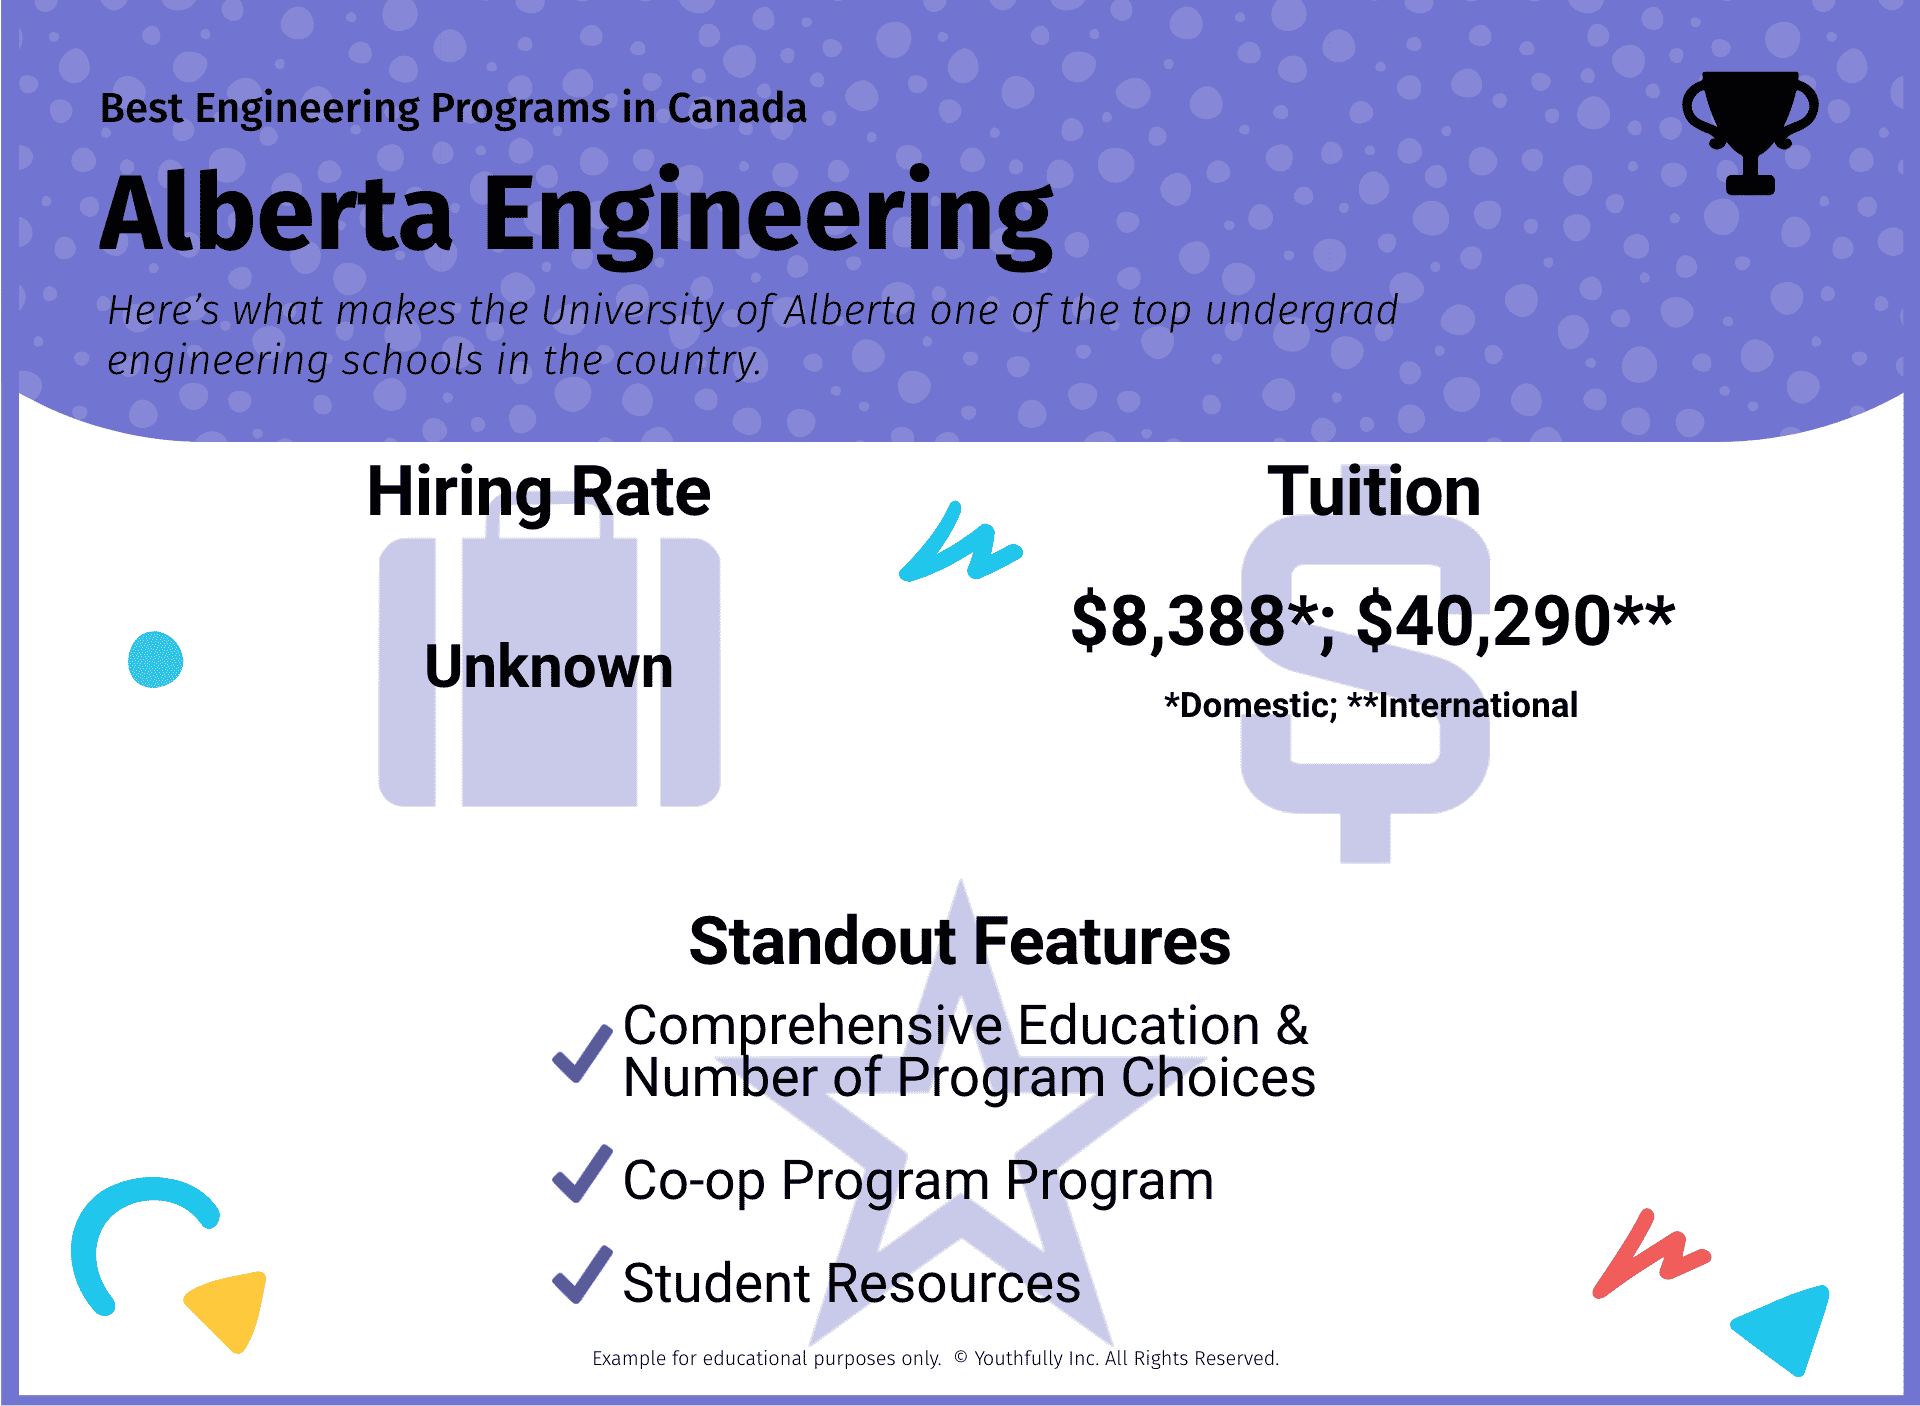 best engineering schools in canada best universities in canada for engineering undergraduate programs best engineering programs in canada alberta engineering